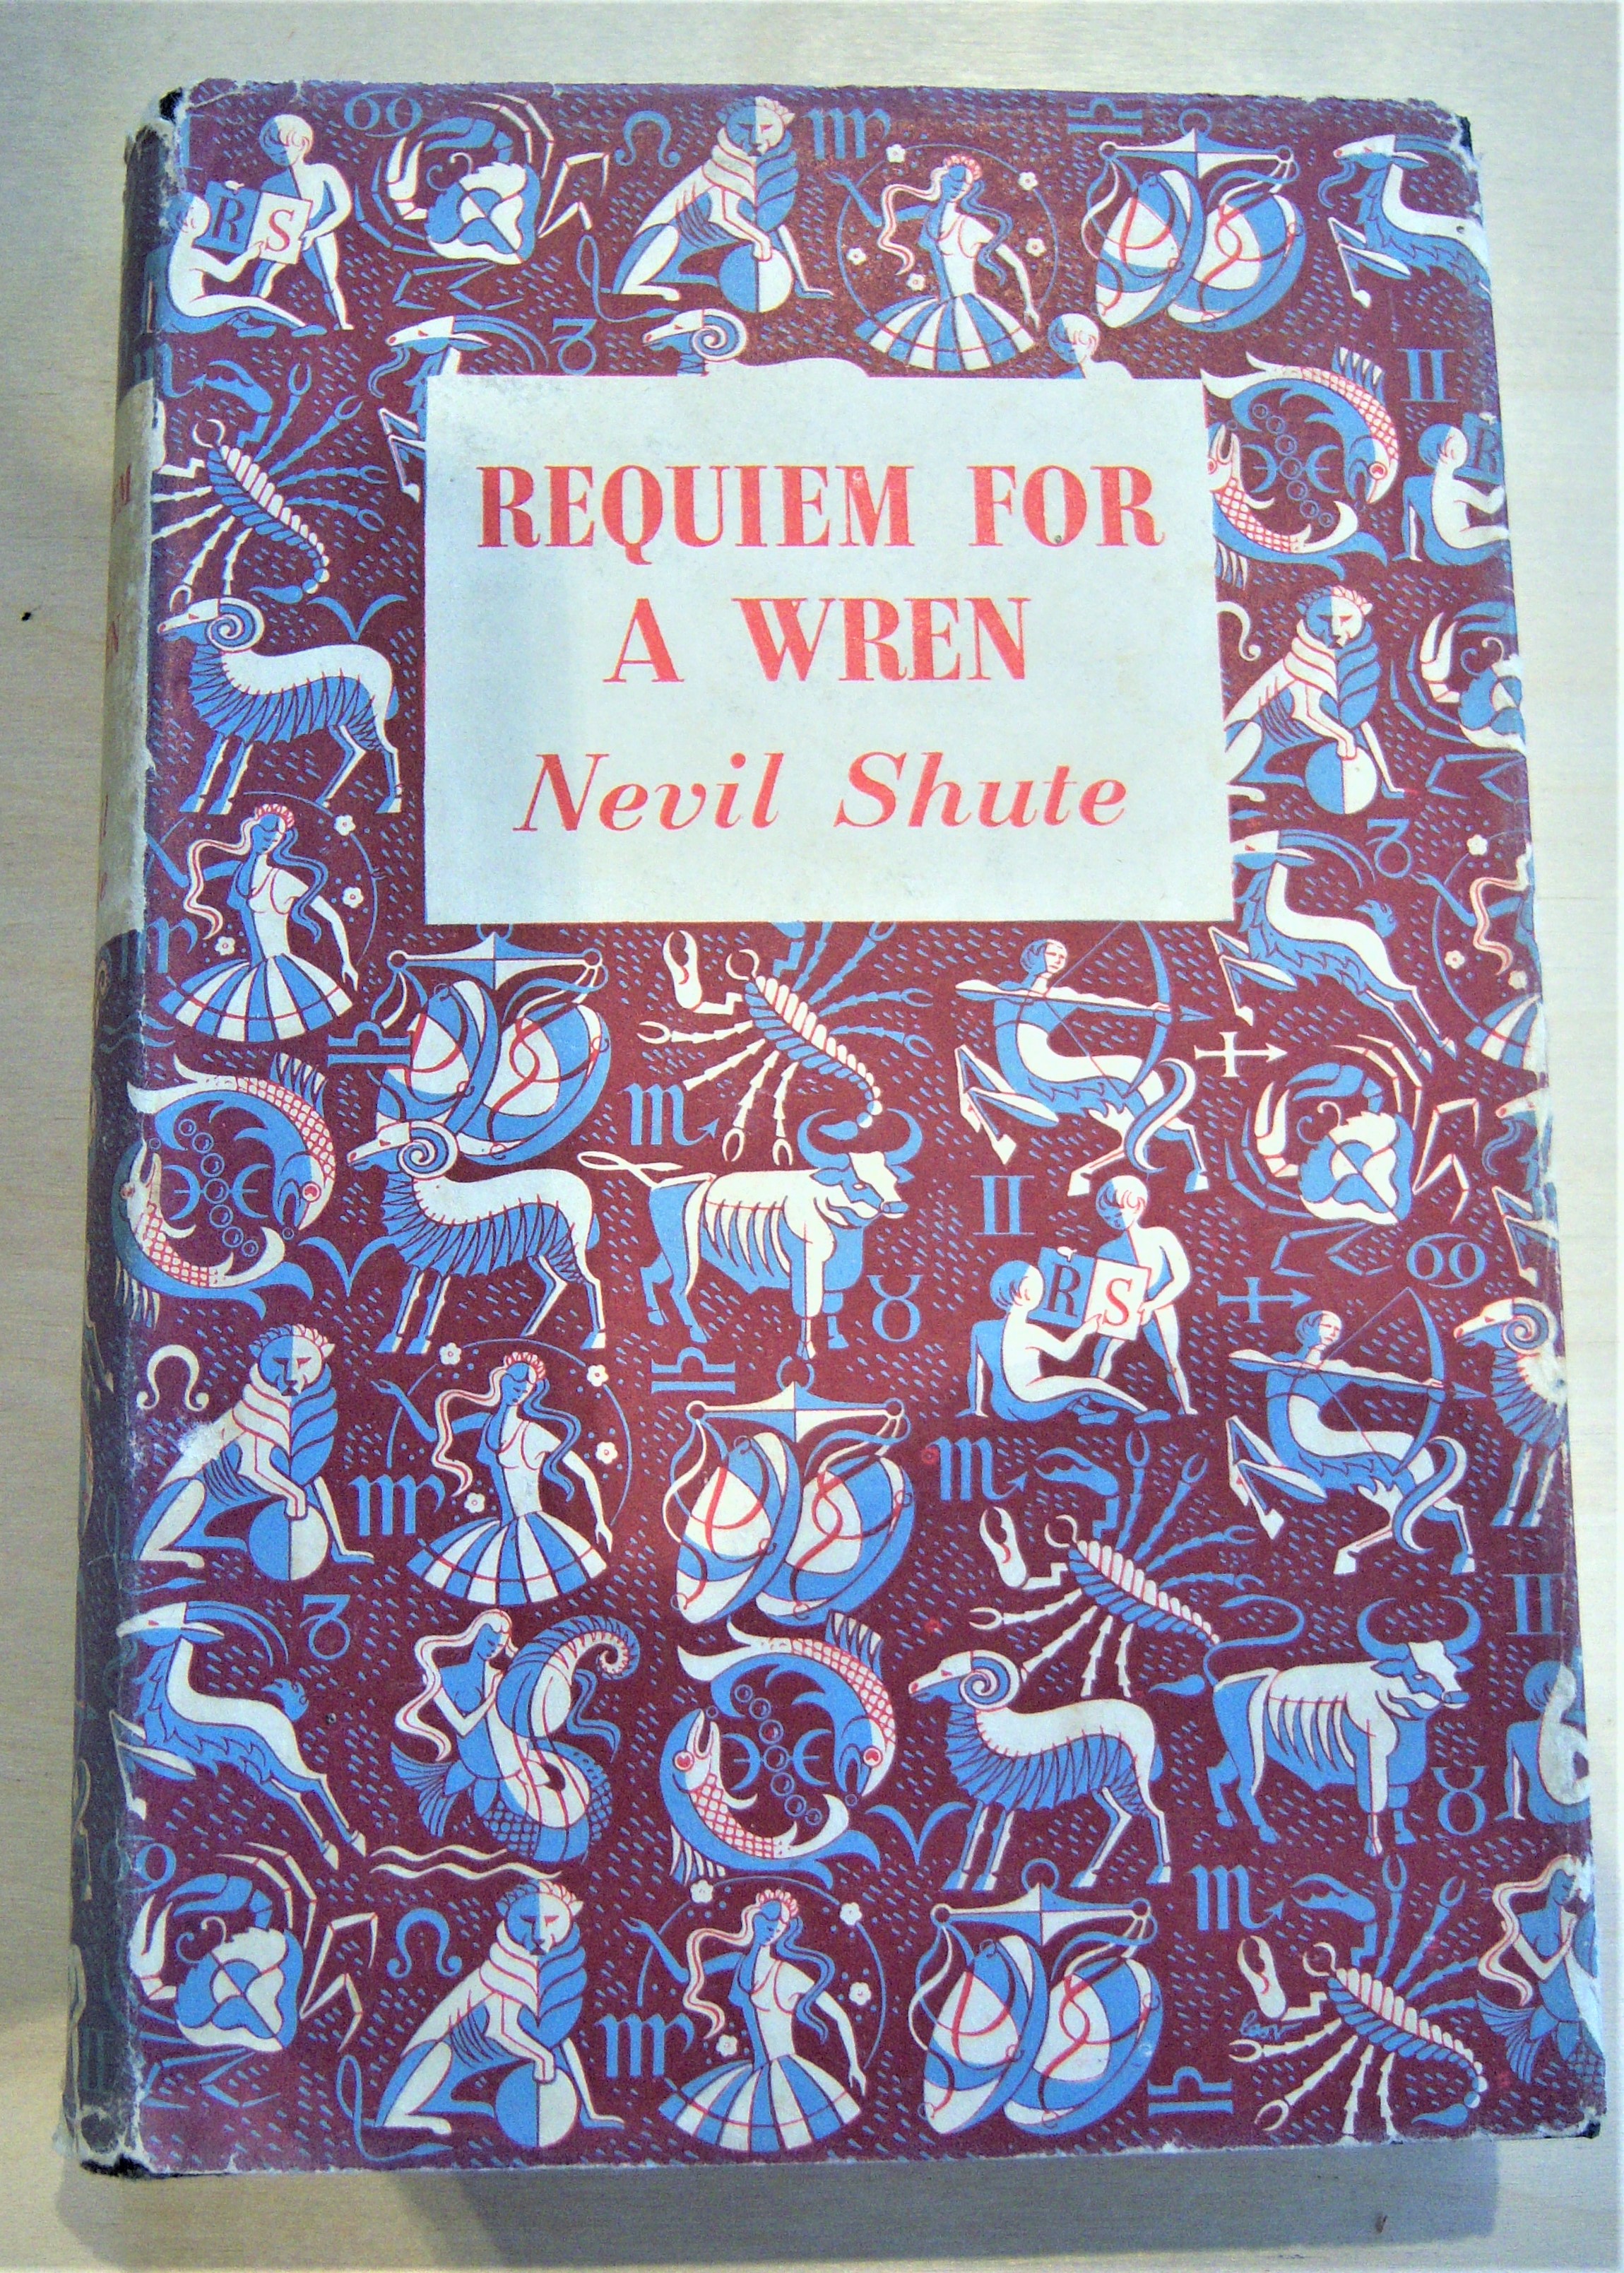 Requiem for a wren - Shute, Nevil